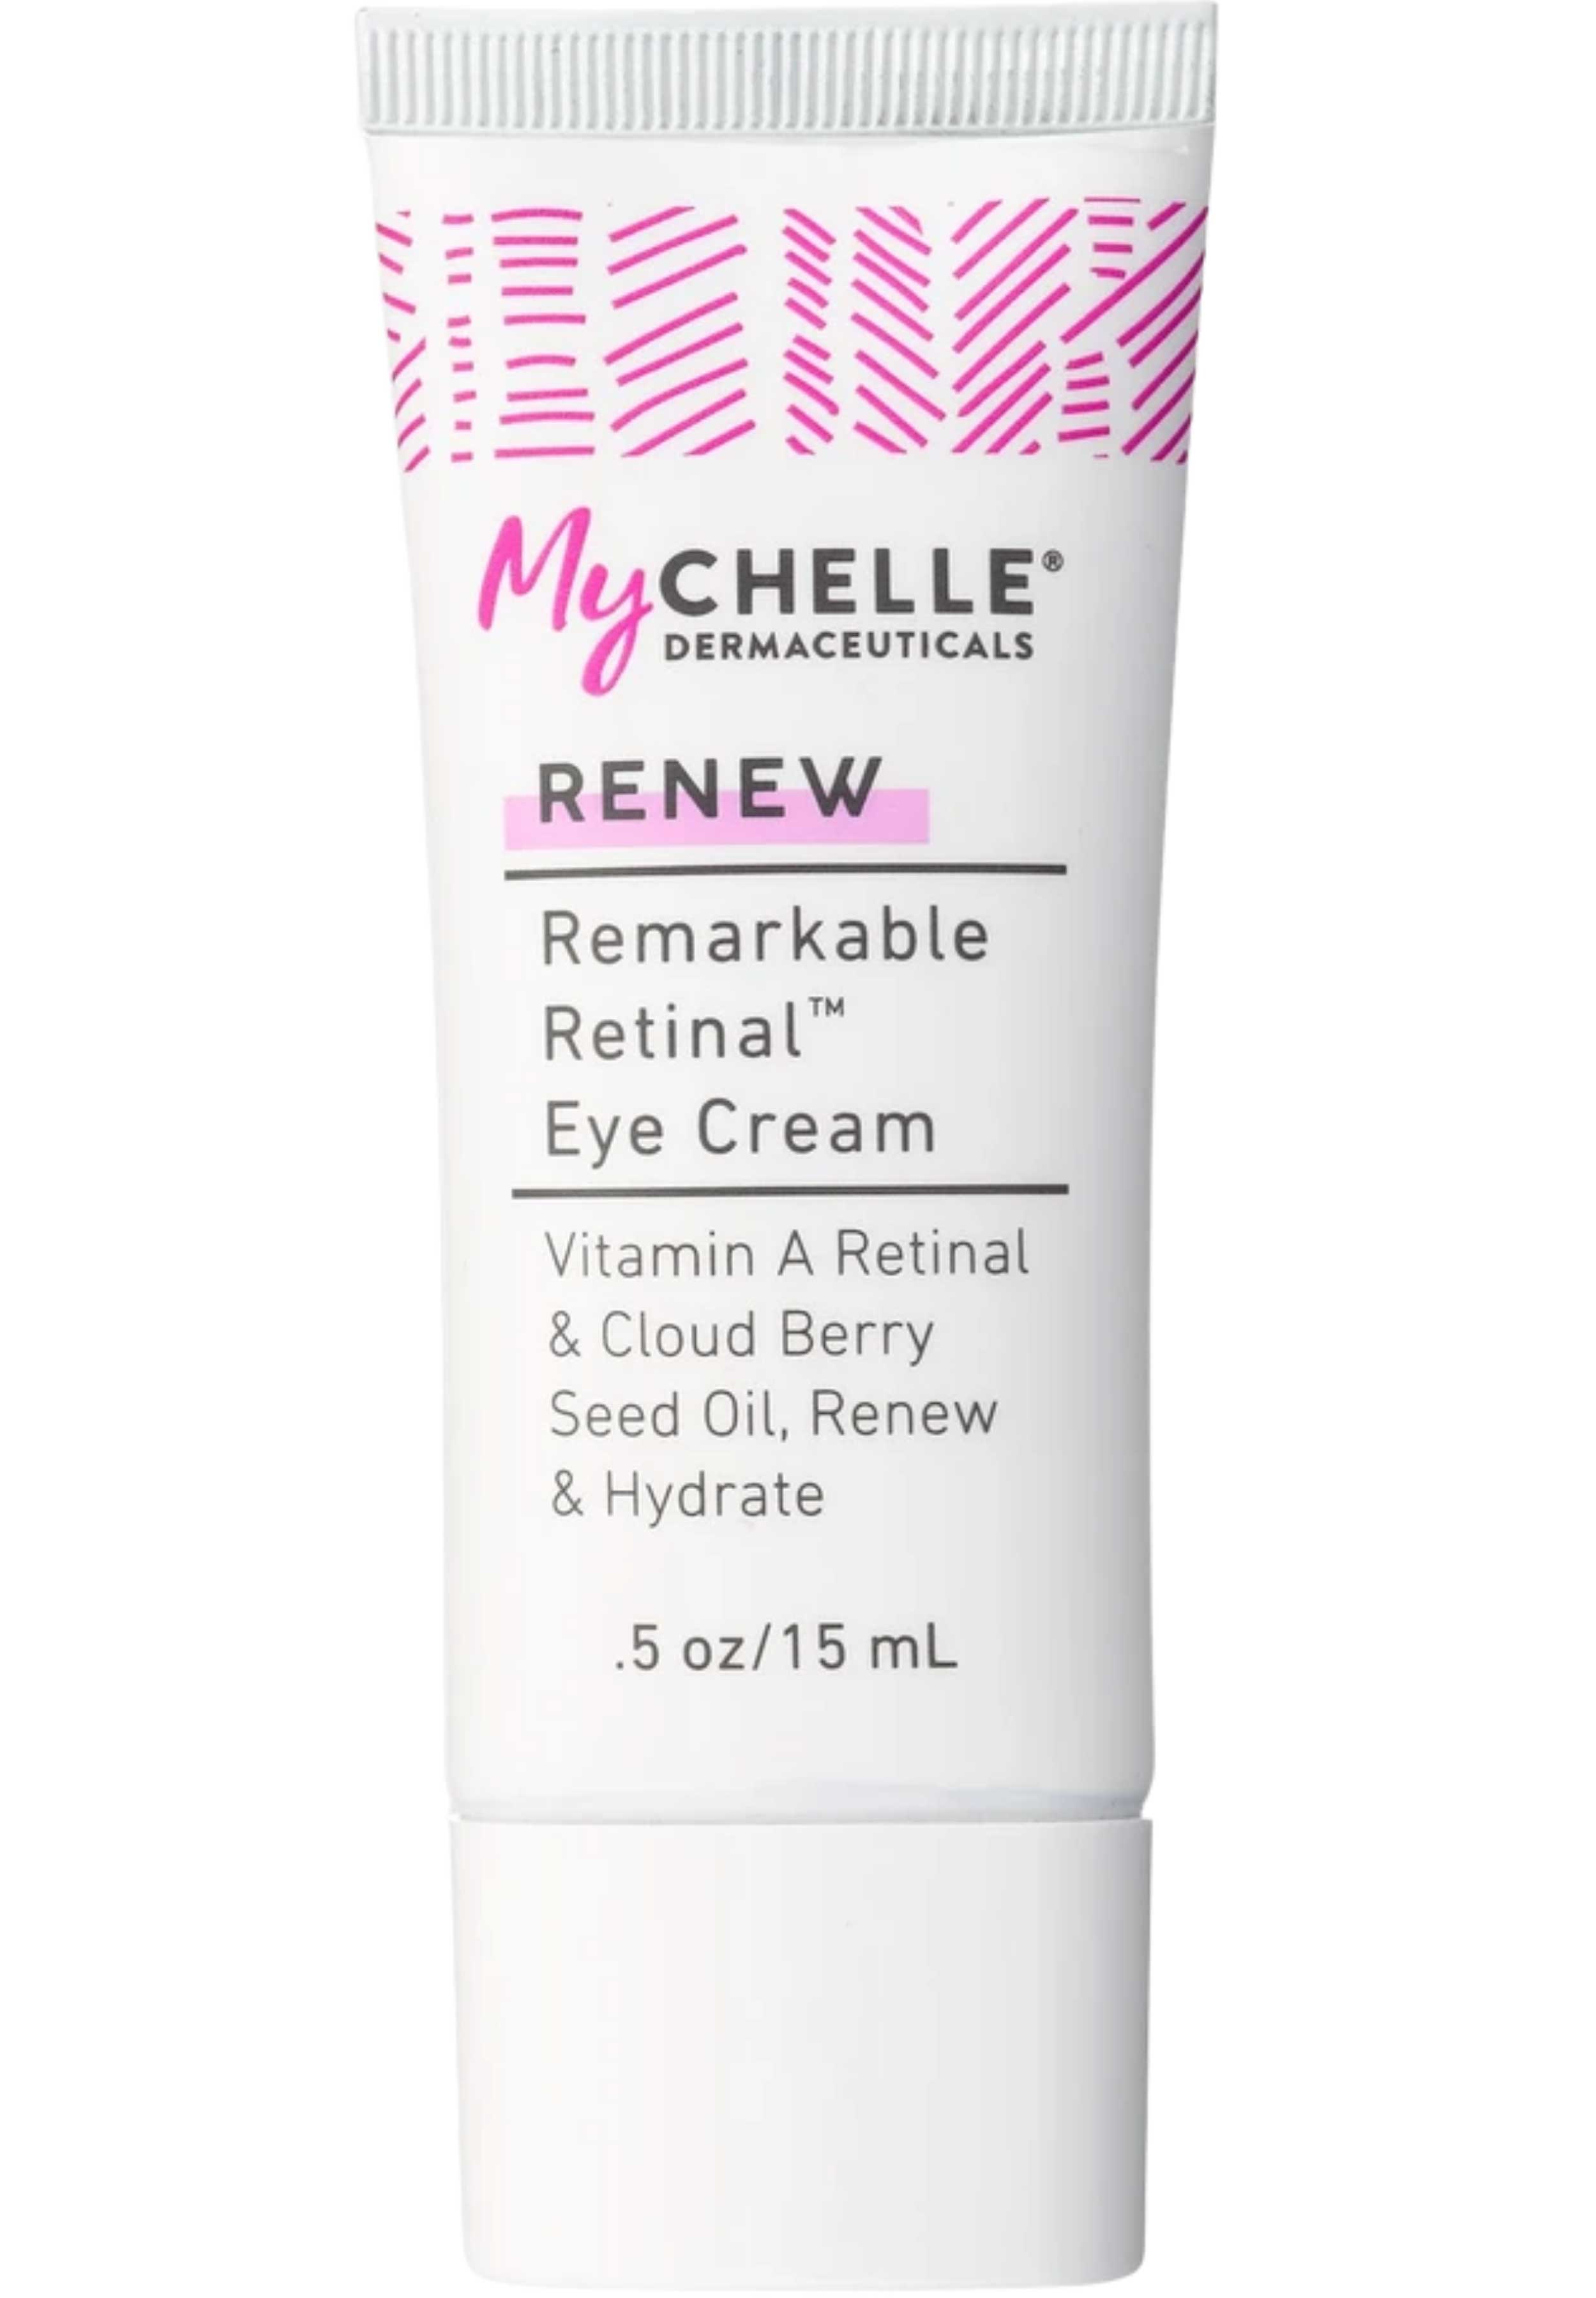 MyChelle Dermaceuticals Remarkable Retinal™ Eye Cream